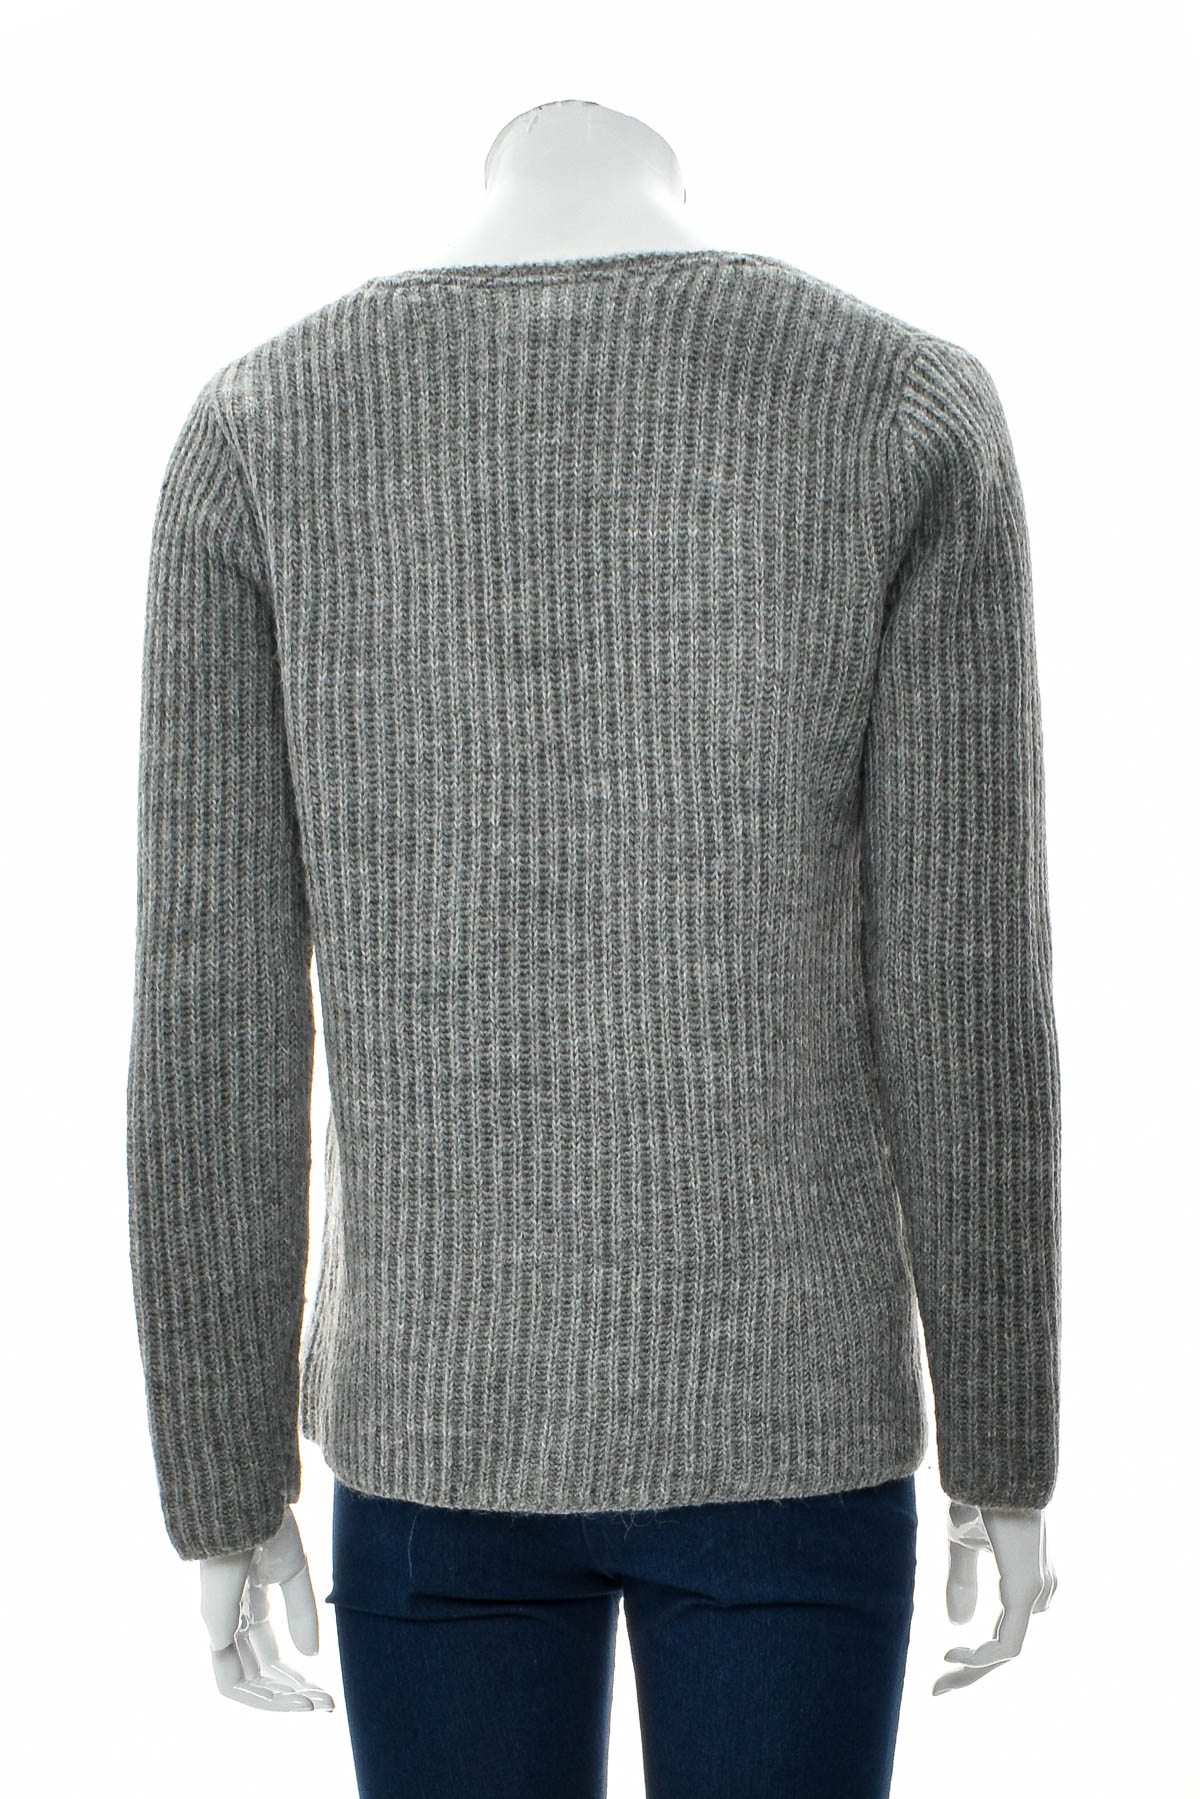 Women's sweater - TOMMY HILFIGER - 1